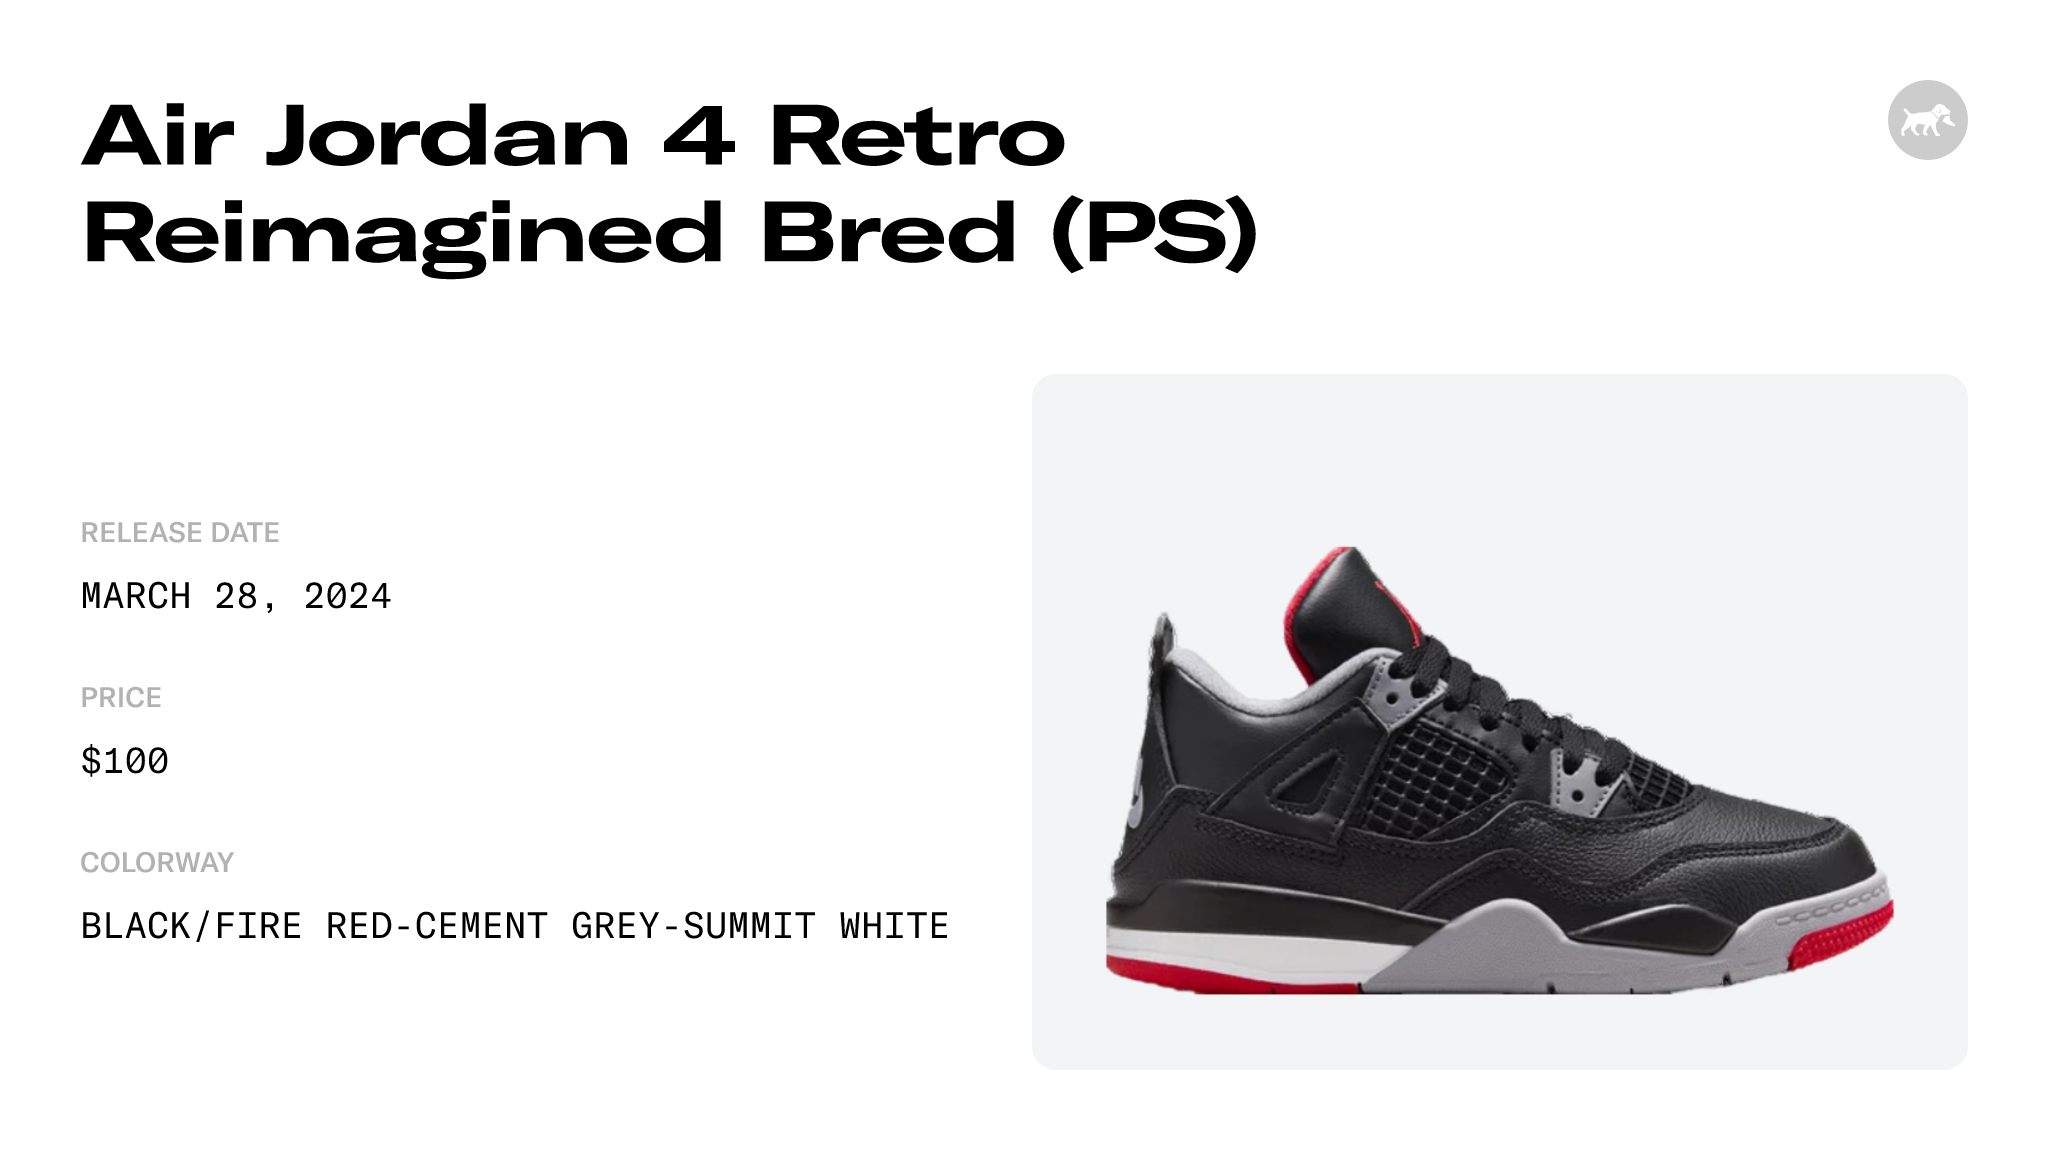 Air Jordan 4 Retro Reimagined Bred (PS) - BQ7669-006 Raffles and Release  Date